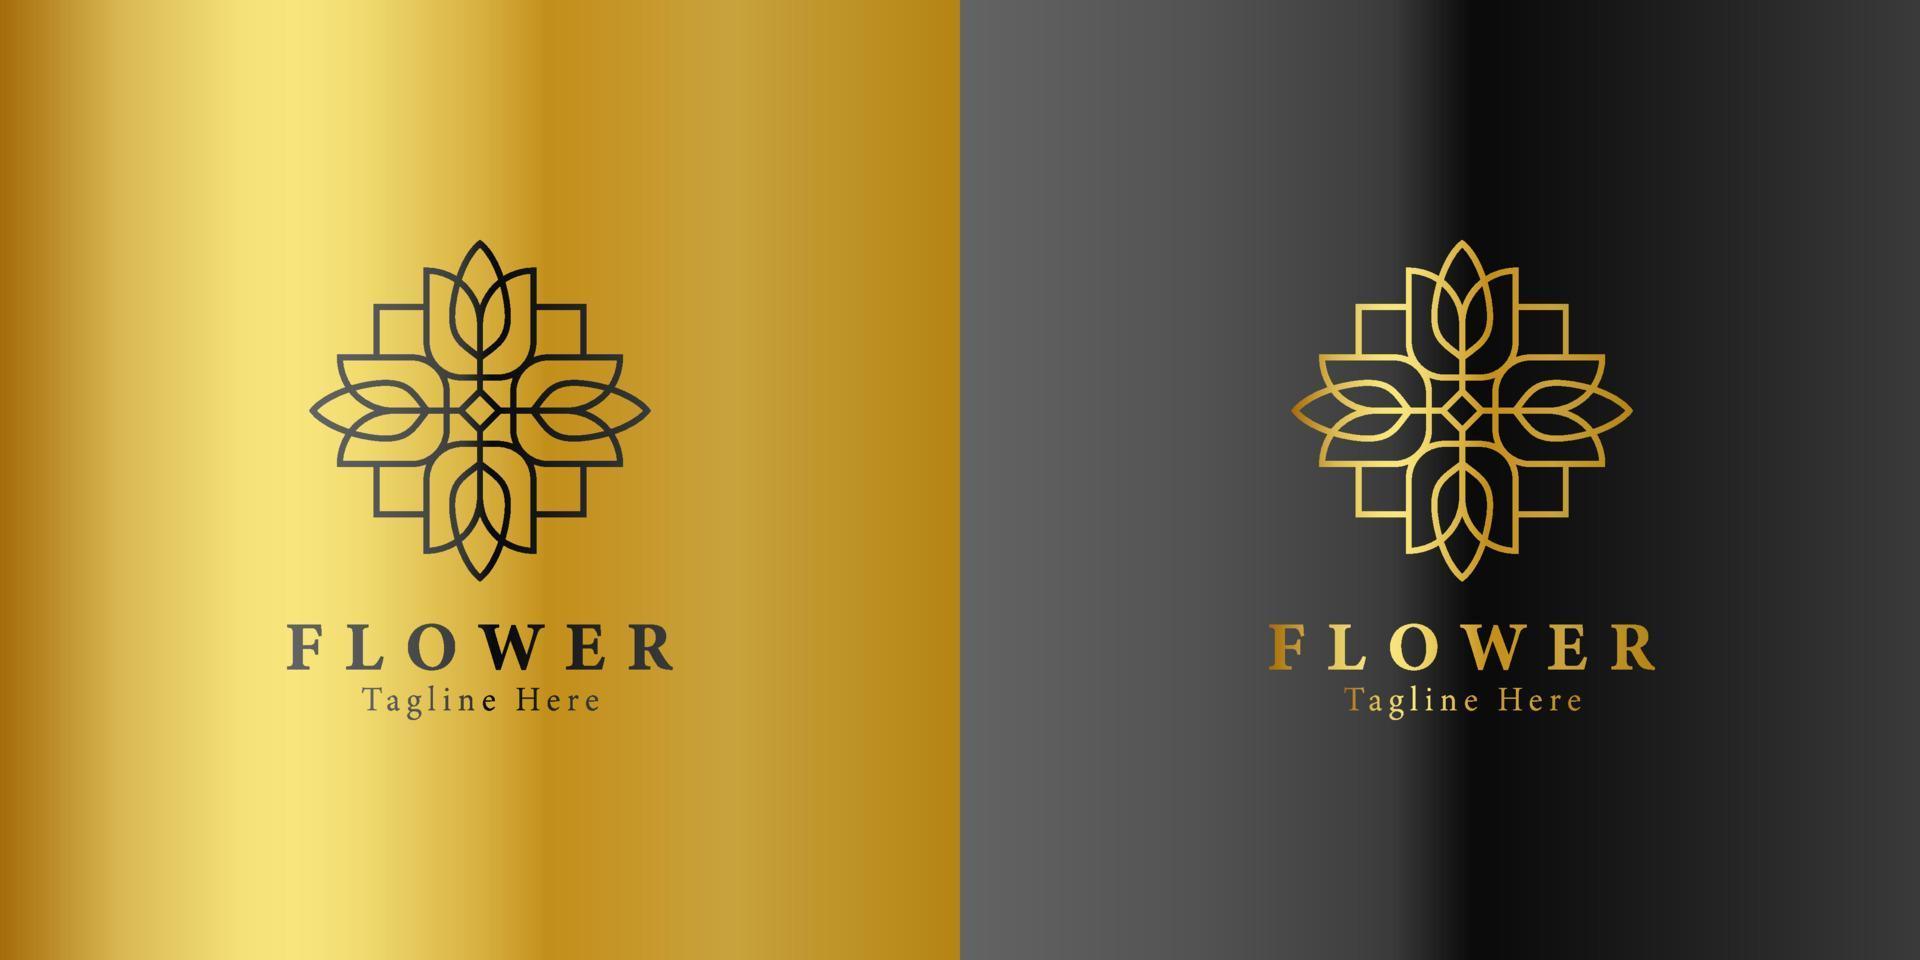 modelo de logotipo de spa de flores de beleza de ouro de luxo design de bem-estar para vetor de negócios de bem-estar de saúde